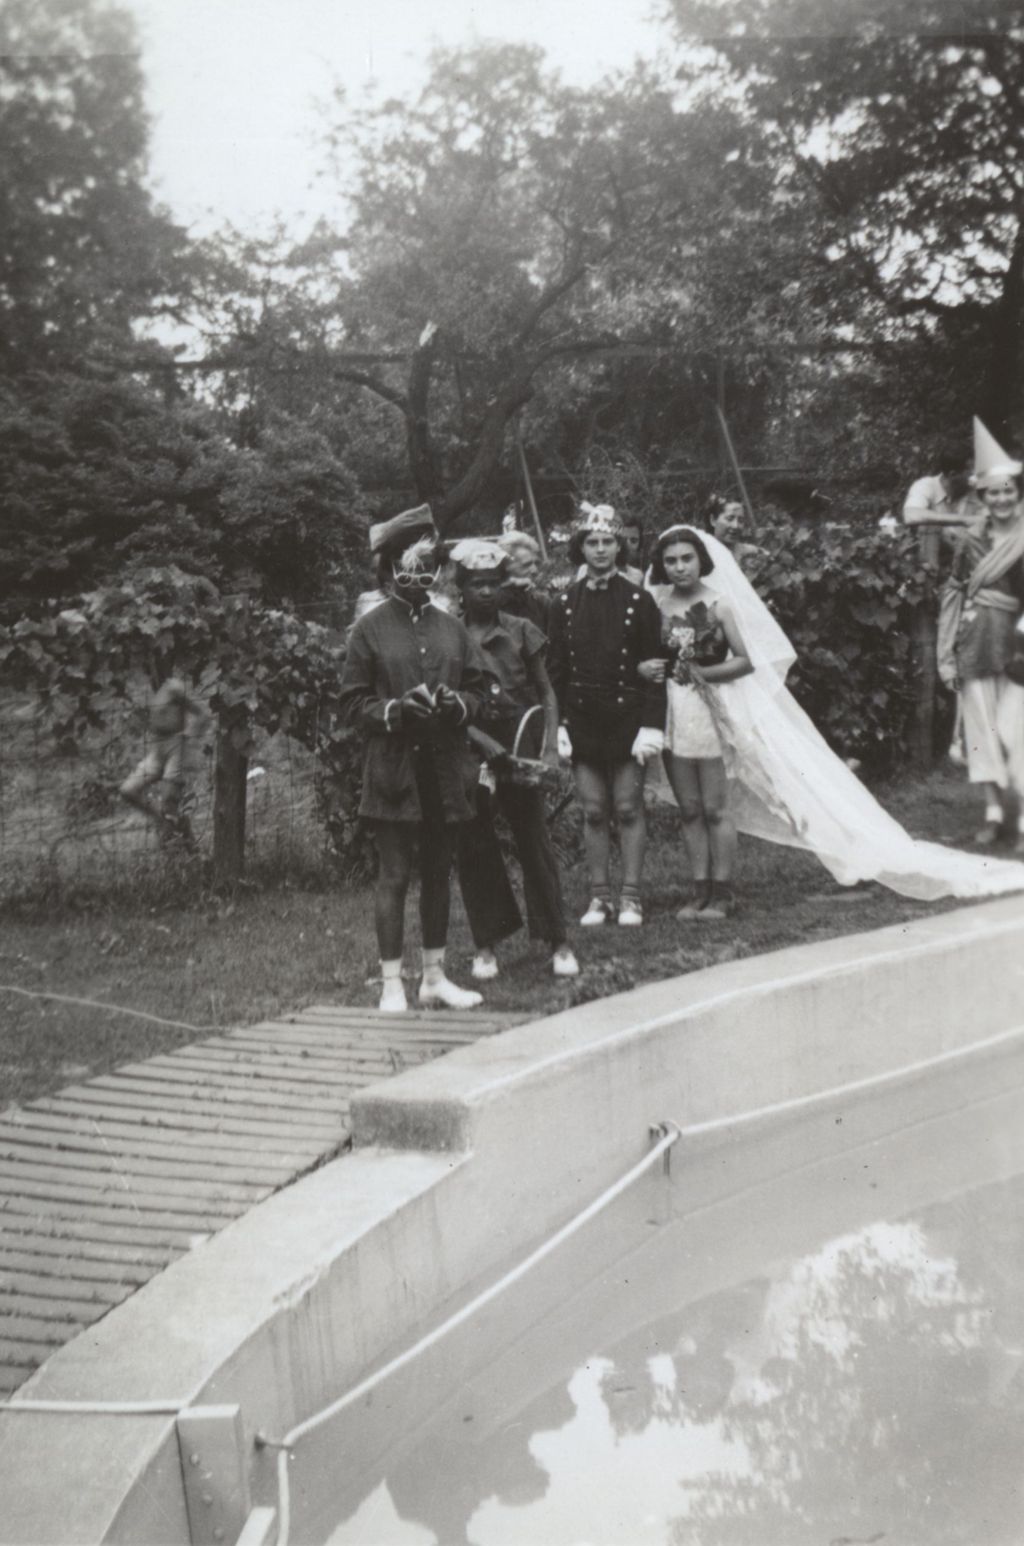 Mock wedding procession near pool